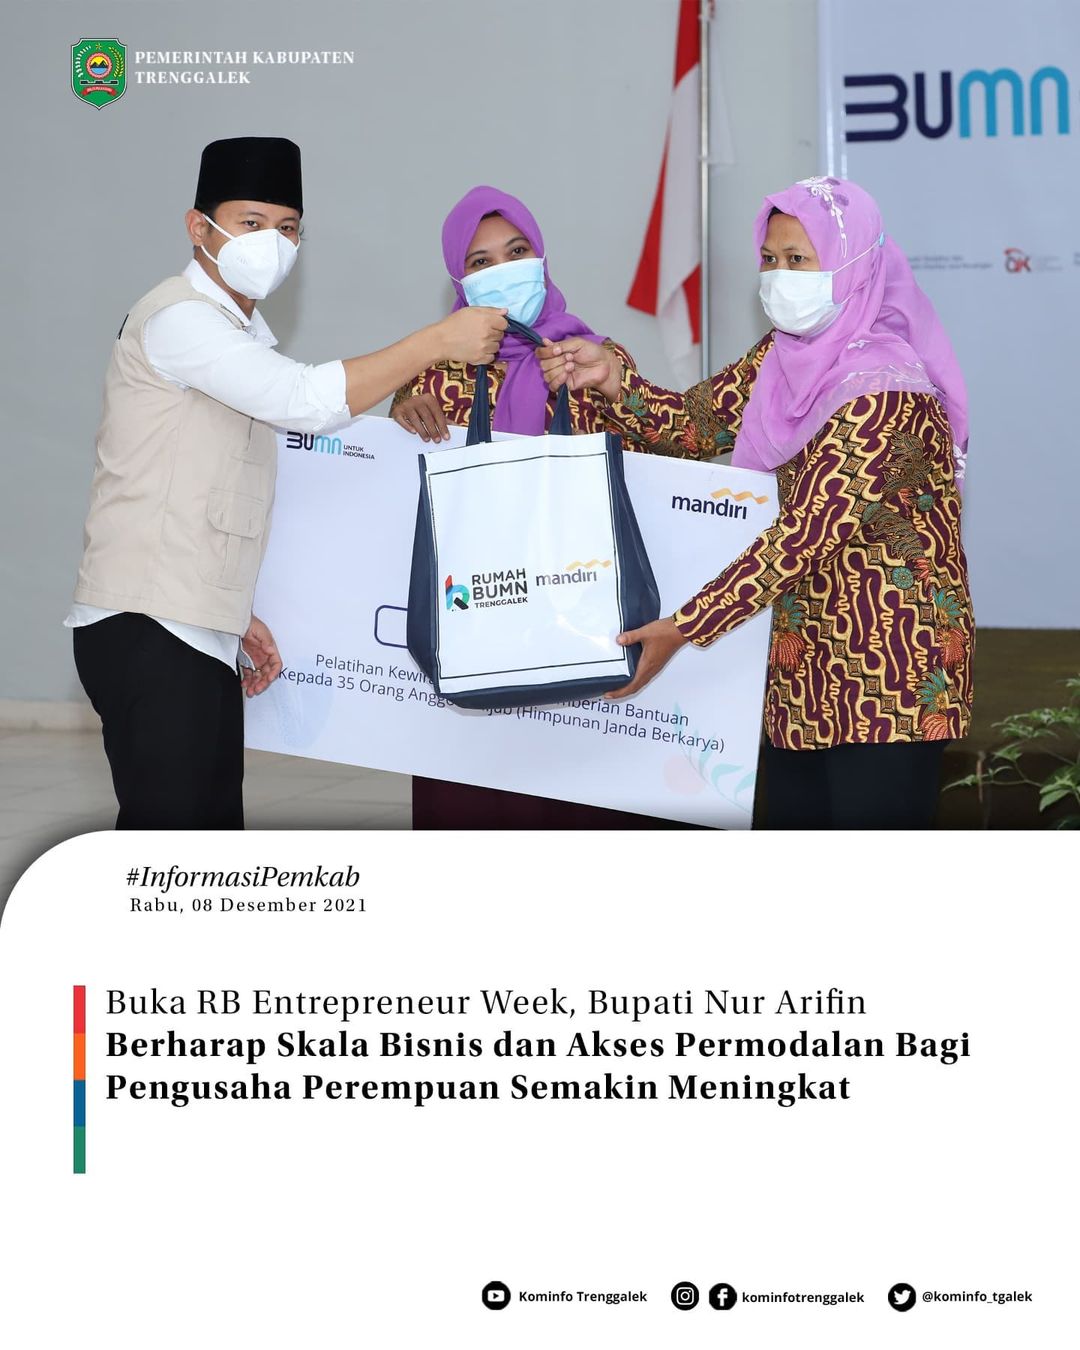 Buka RB Intrepreneur Week, Bupati Nur Arifin Berharap Skala Bisnis dan Akses Permodalan Bagi Pengusaha Perempuan Semakin Meningkat